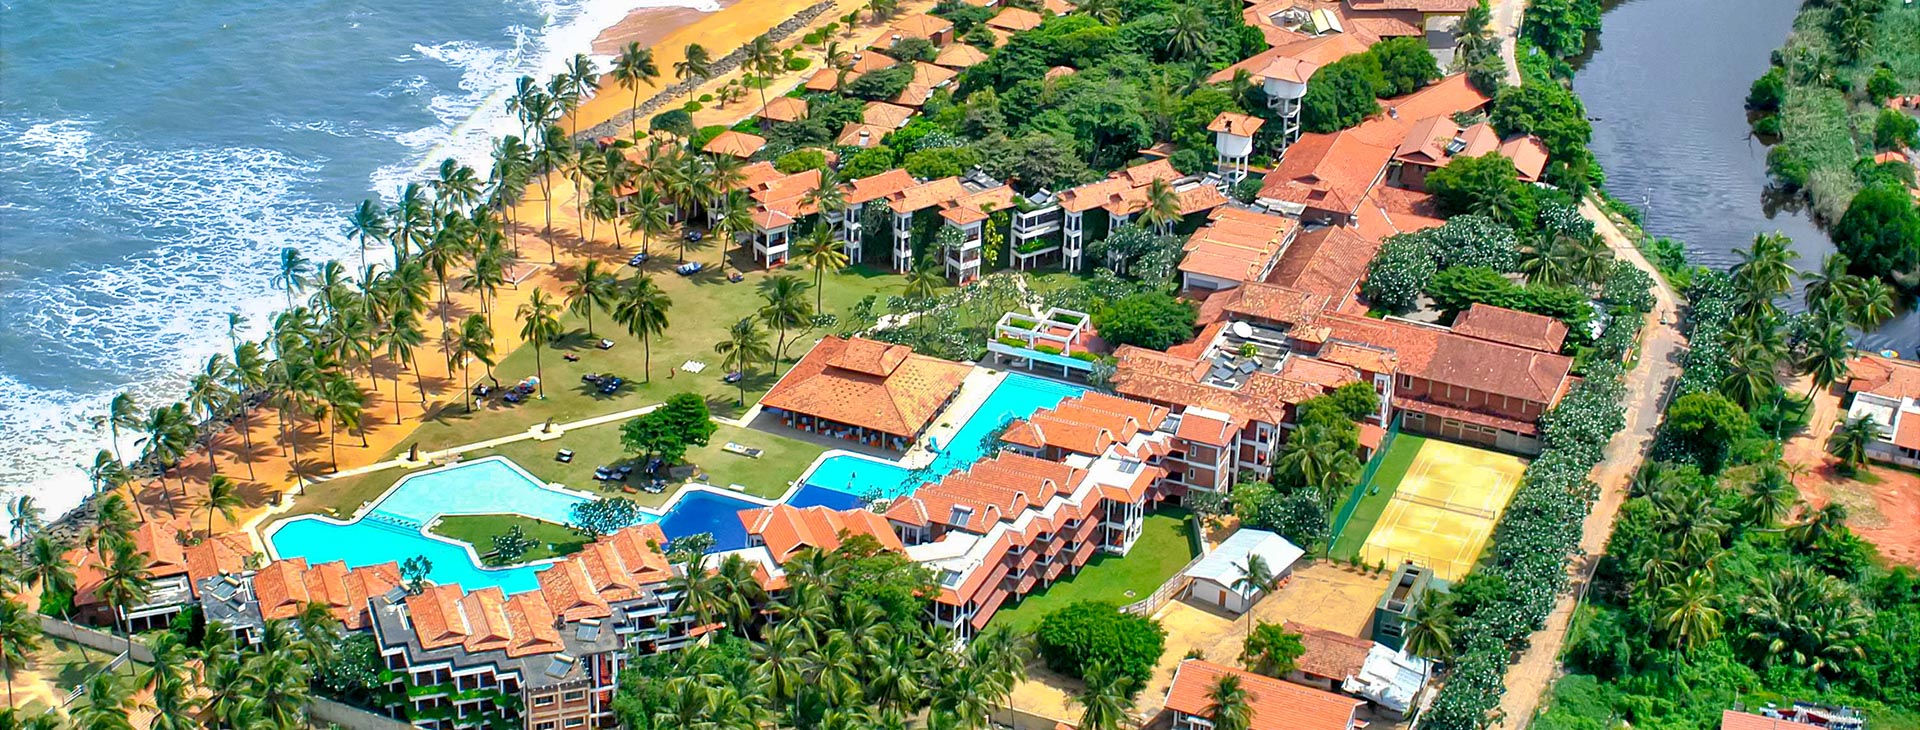 Club Hotel Dolphin - dovolená na Srí Lance Obrázok1